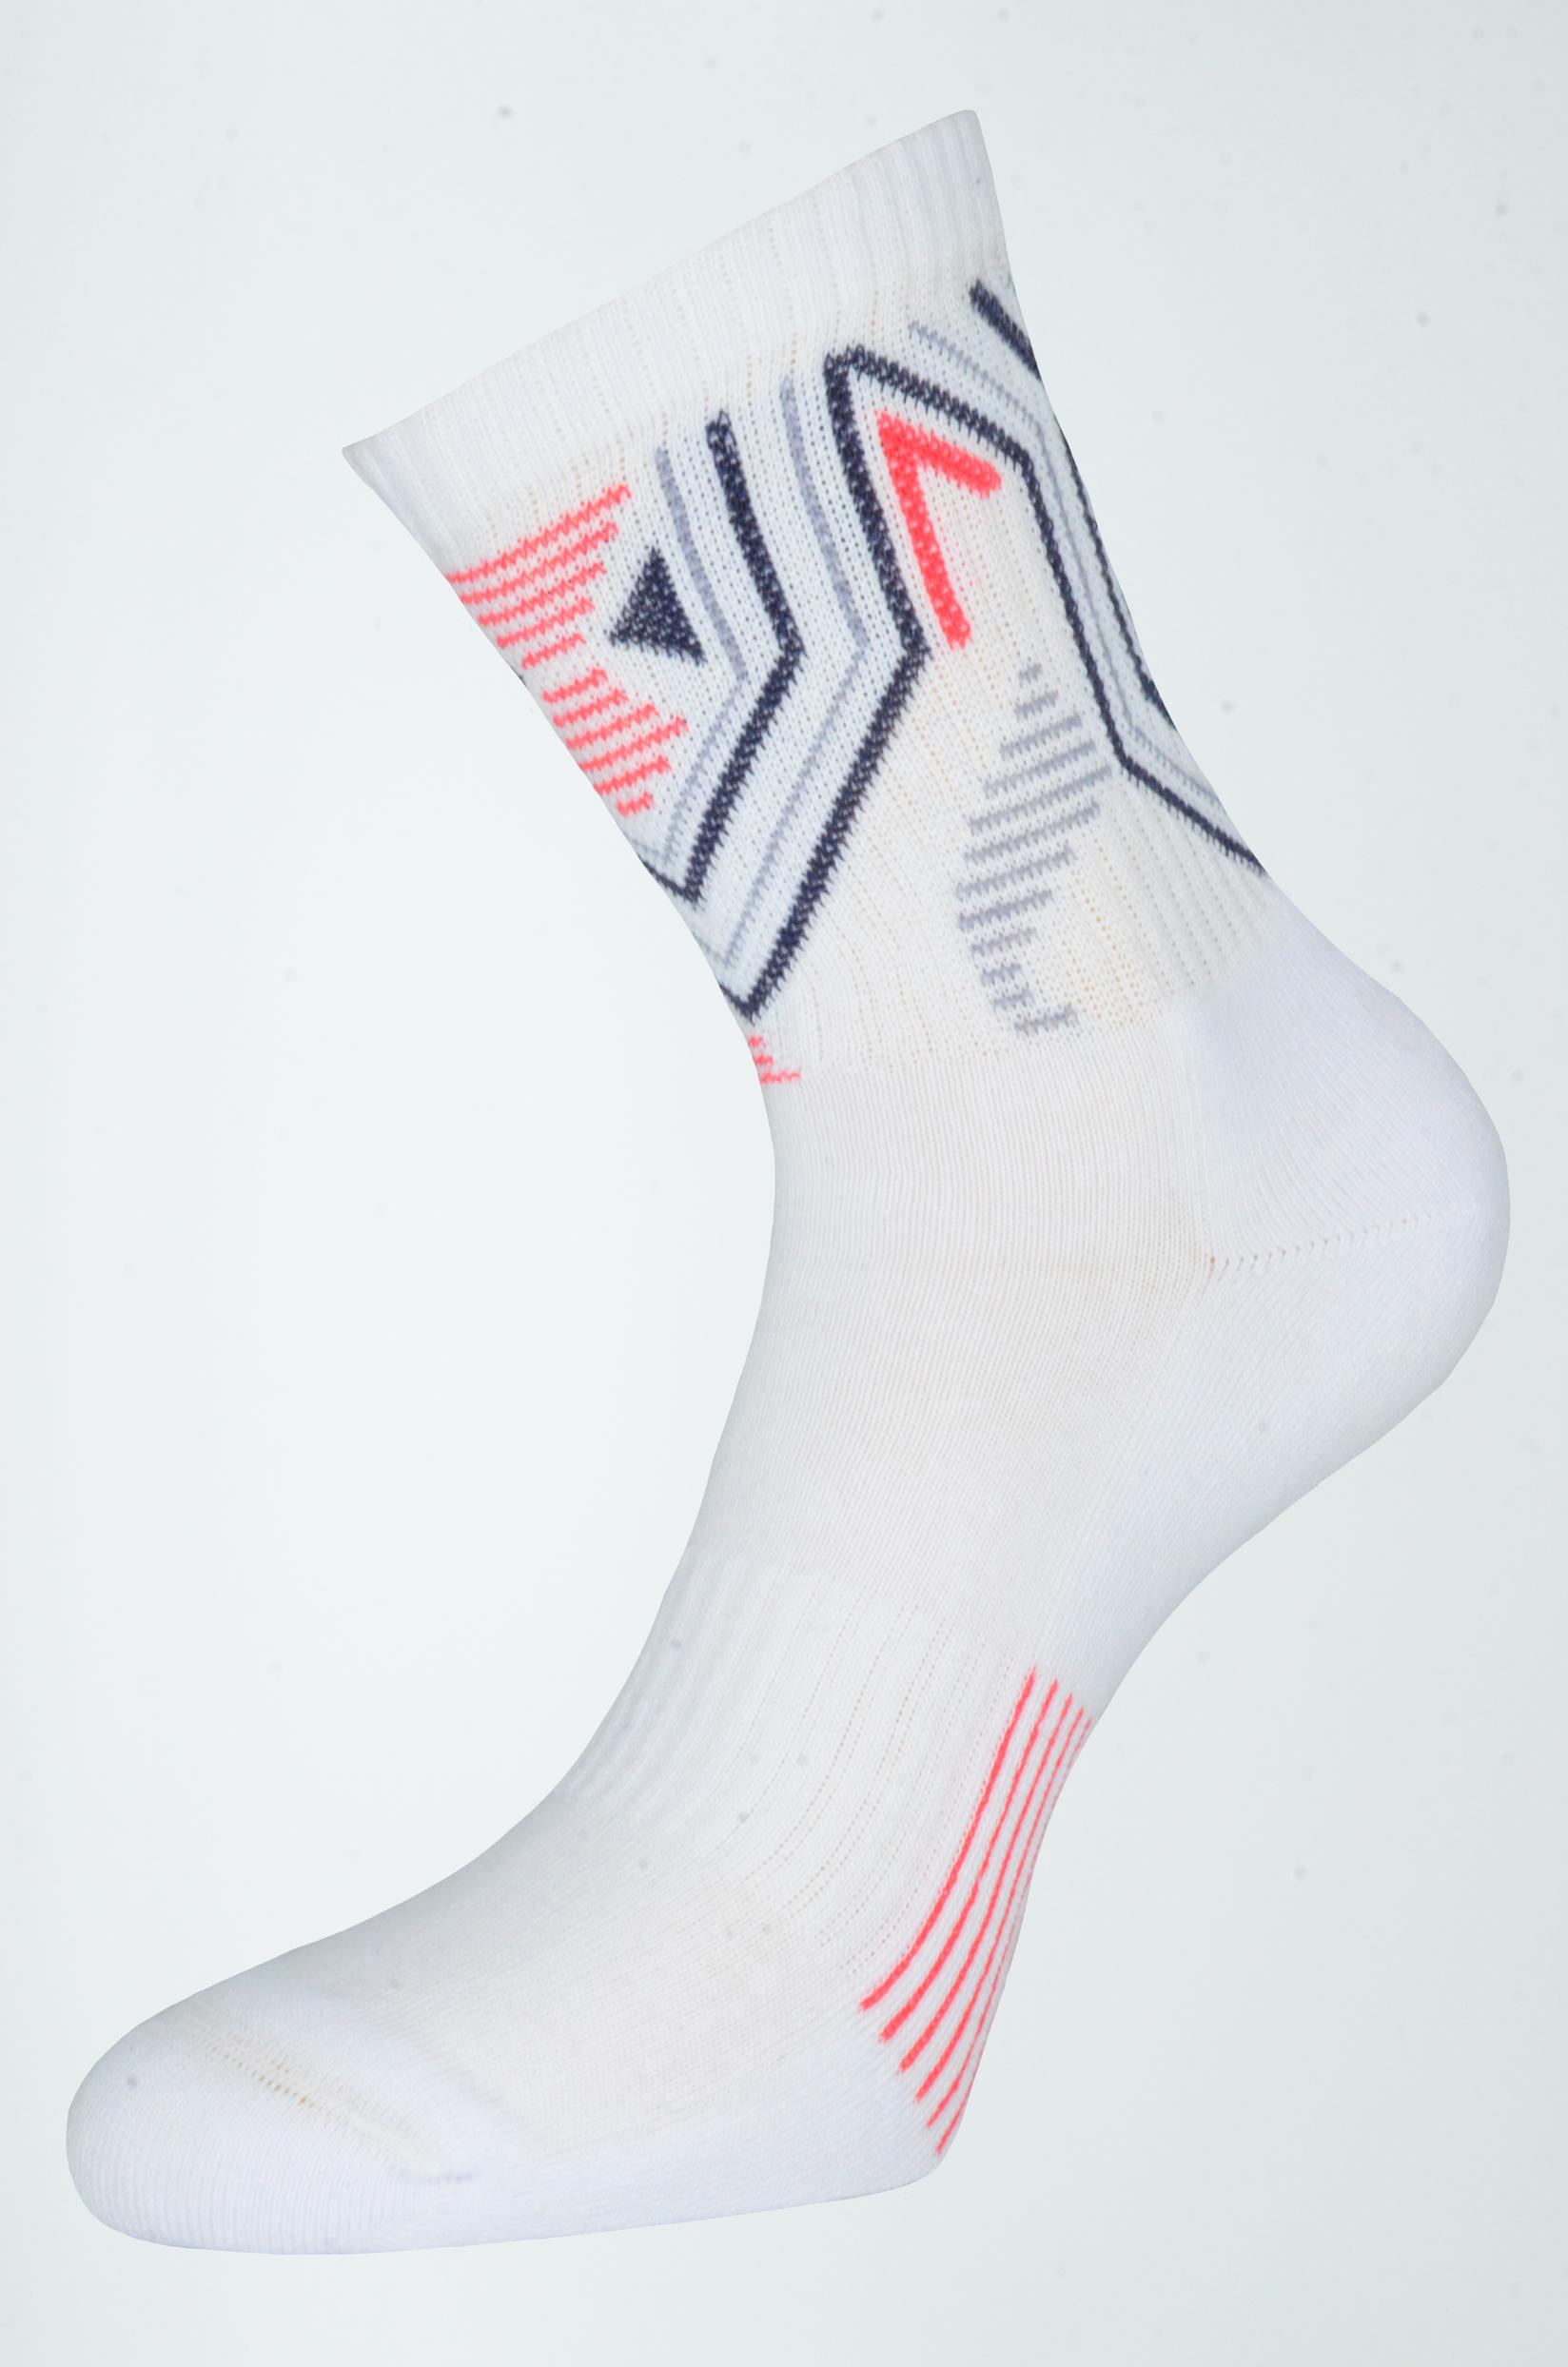 Selected image for GERBI Sportske čarape Sport Style   45-47 m7 bele